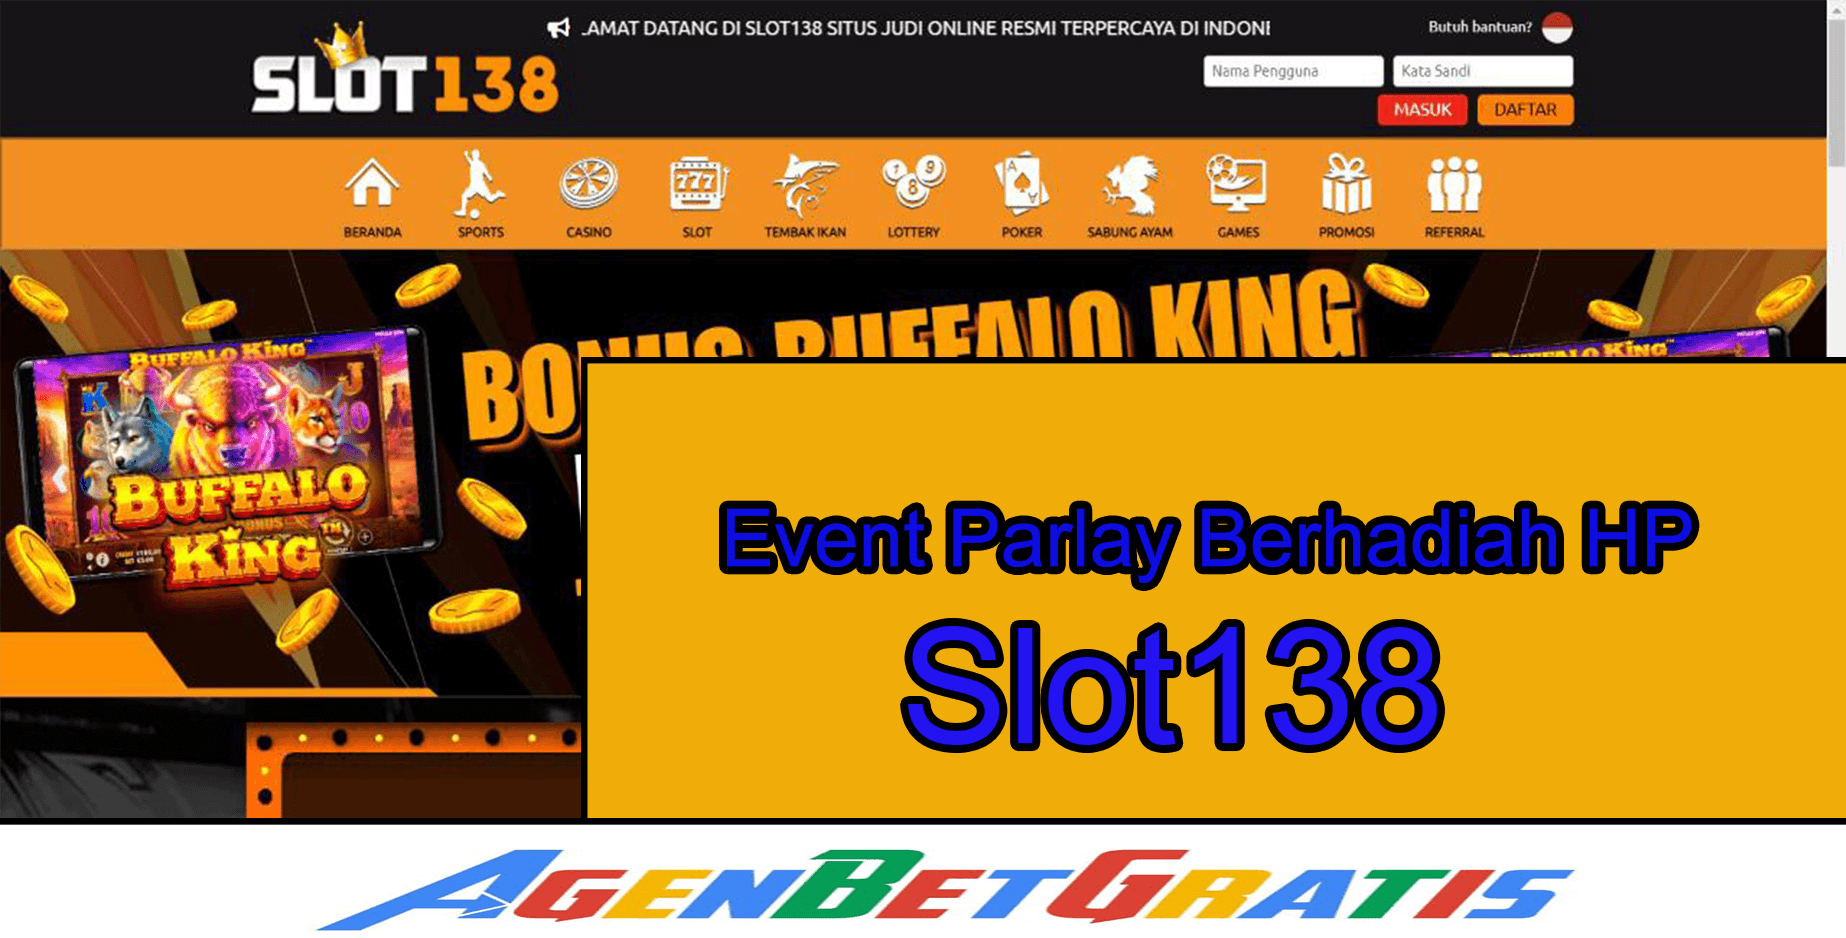 SLOT138 - Event Parlay Berhadiah HP